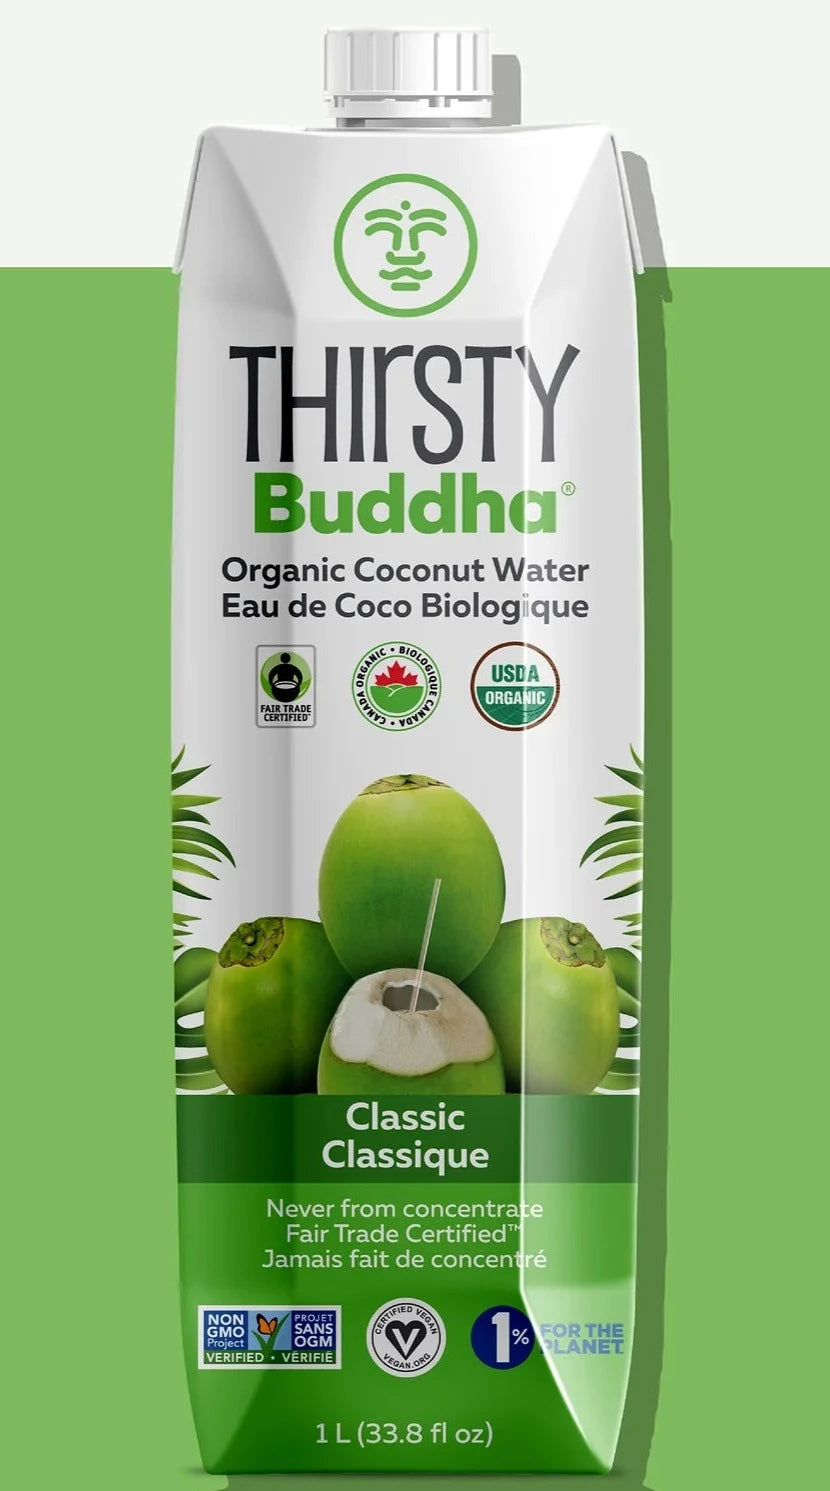 Eau de coco biologique de qualité supérieure par Thirsty Buddha, 1L